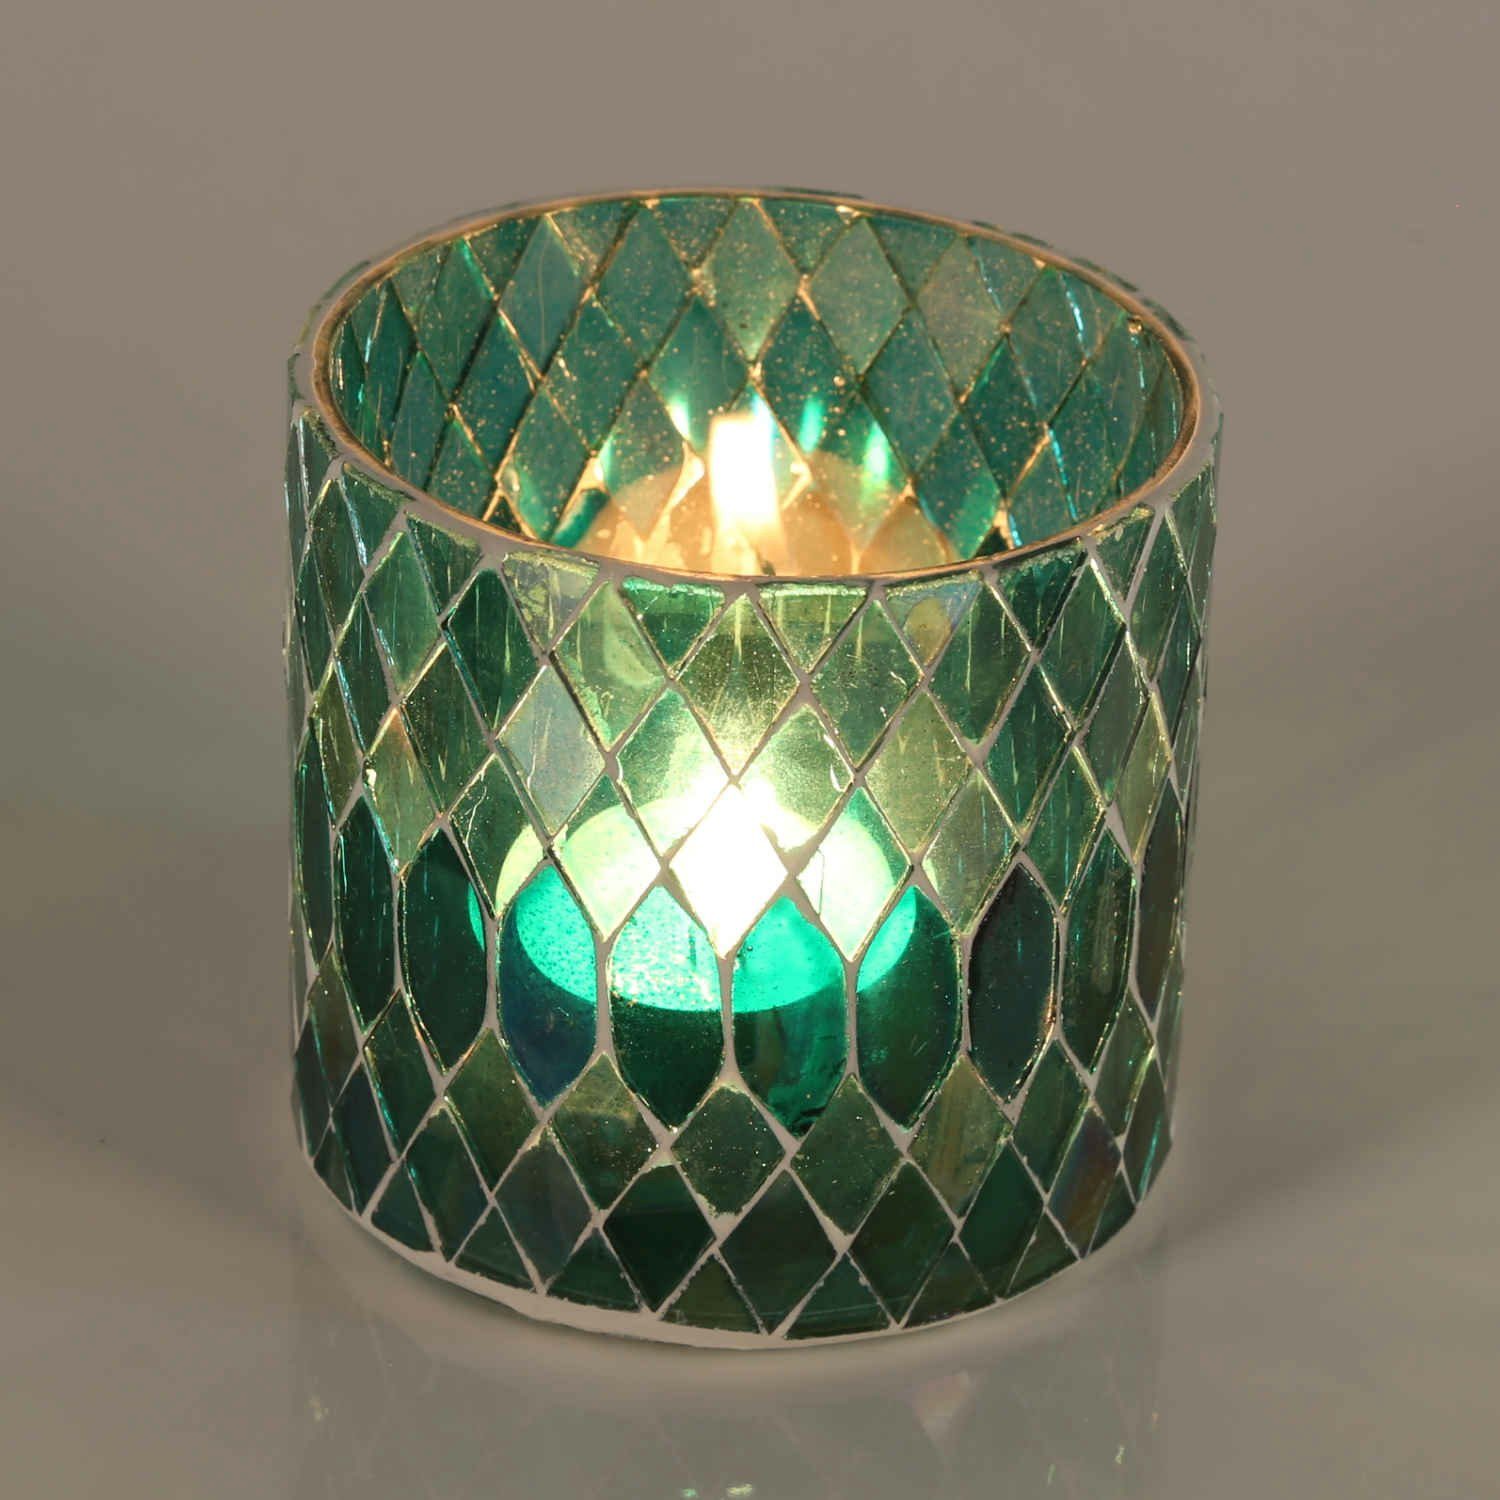 Casa Moro Windlicht Marokkanisches Mosaik Windlicht Rayan Grün aus Glas  handgefertigt (Teelichthalter Boho Chic Kerzenständer Kerzenhalter,  Glaswindlicht in den Größen S und M oder als 2er Set erhältlich),  Kunsthandwerk pur für einfach